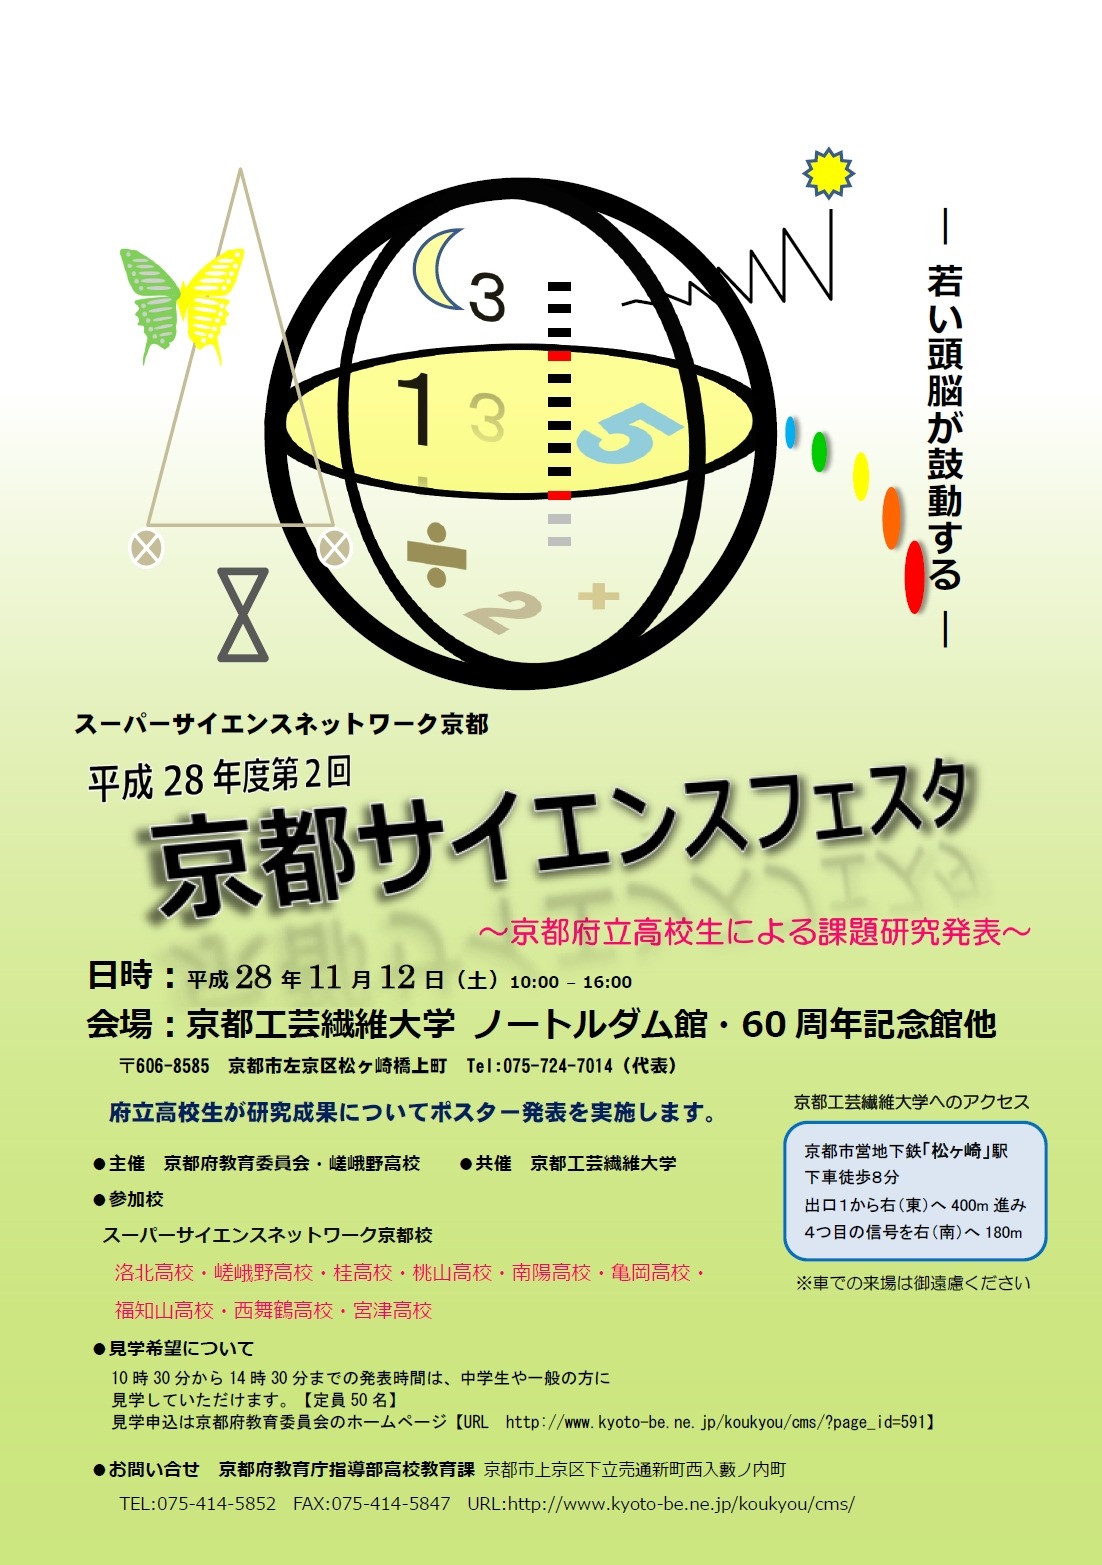 SSH生徒らの研究成果を発表、京都サイエンスフェスタ11/12 | リセマム